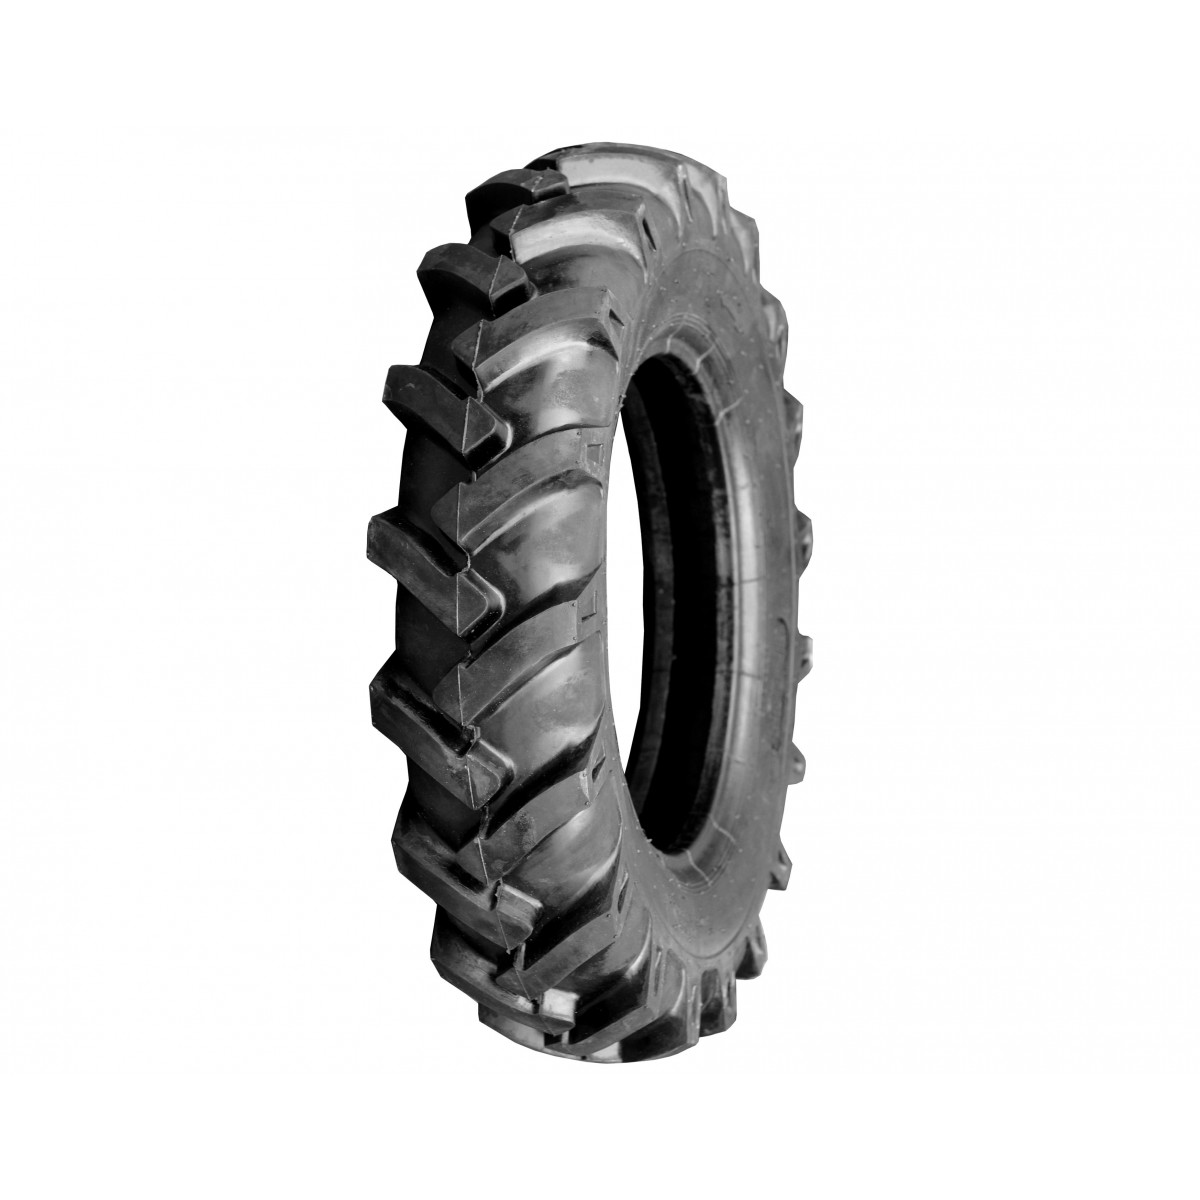 Poľnohospodárska pneumatika 8.00-18 8PR 8-18 8x18 FIR R1